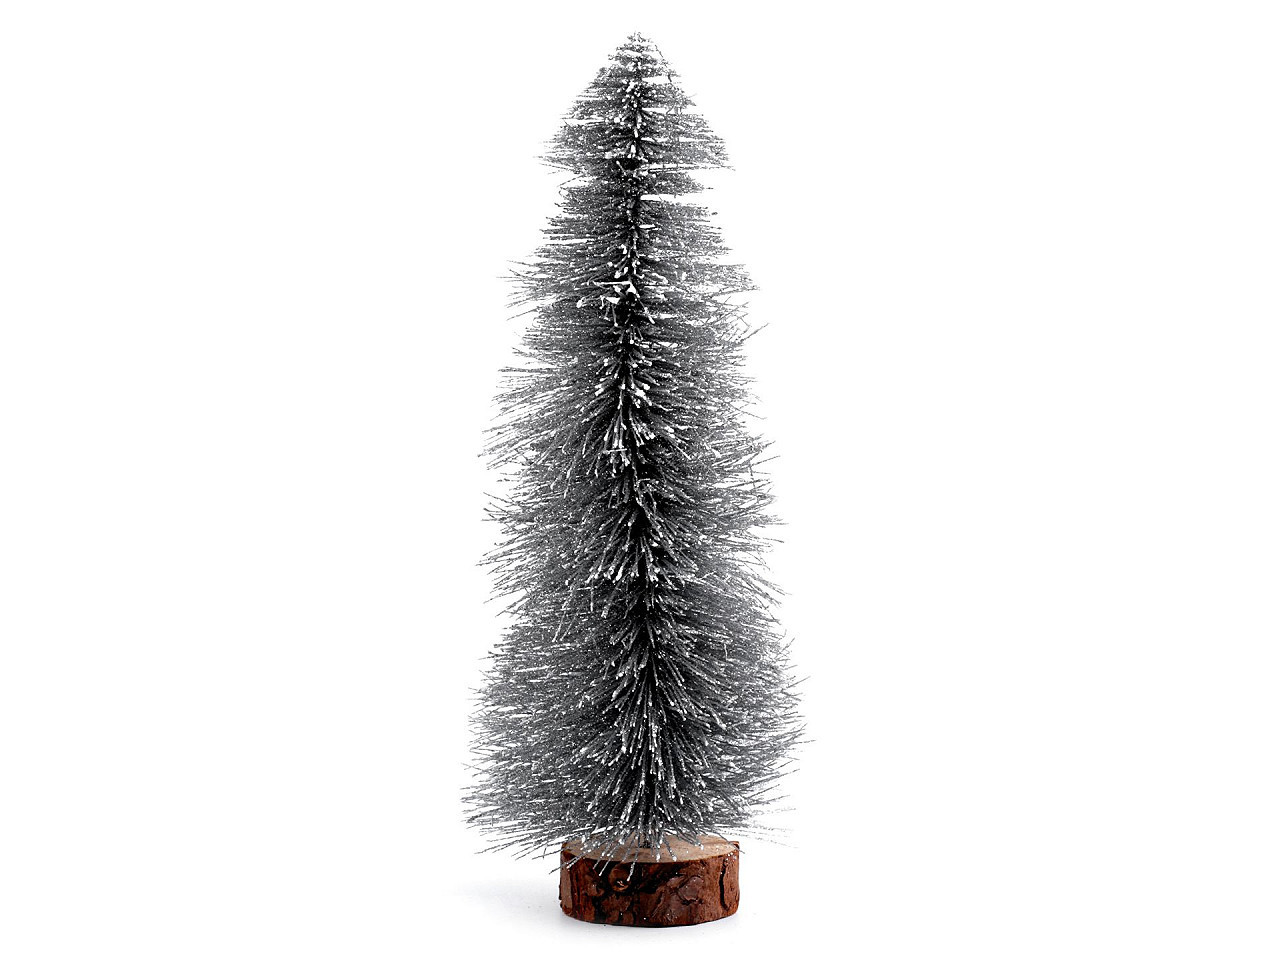 Dekorace vánoční stromeček s glitry, barva 1 stříbrná